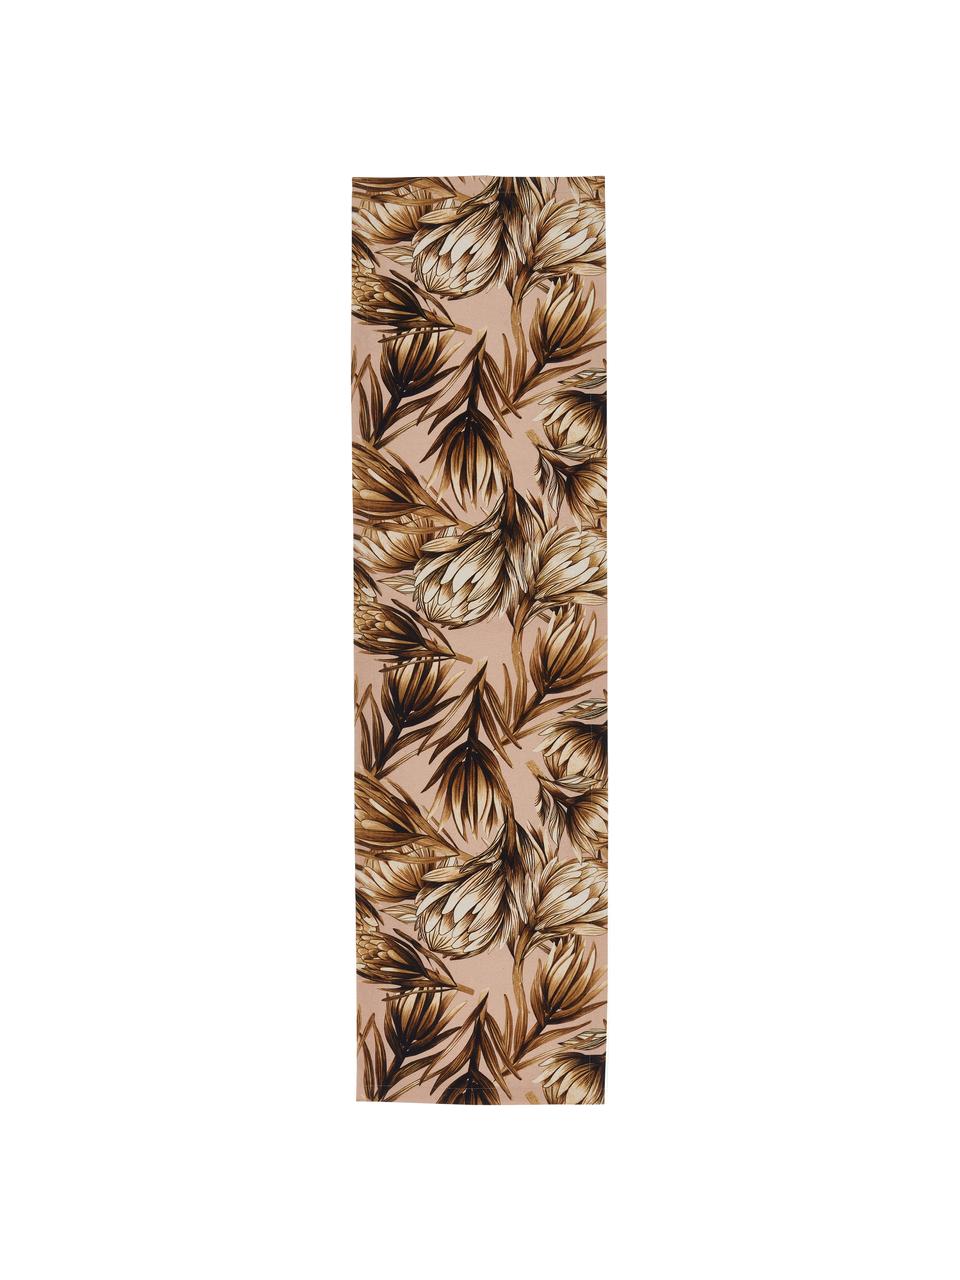 Bieżnik z mieszanki bawełny Protea, 85% bawełna, 15% len, Blady różowy, odcienie brązowego, S 40 x D 145 cm